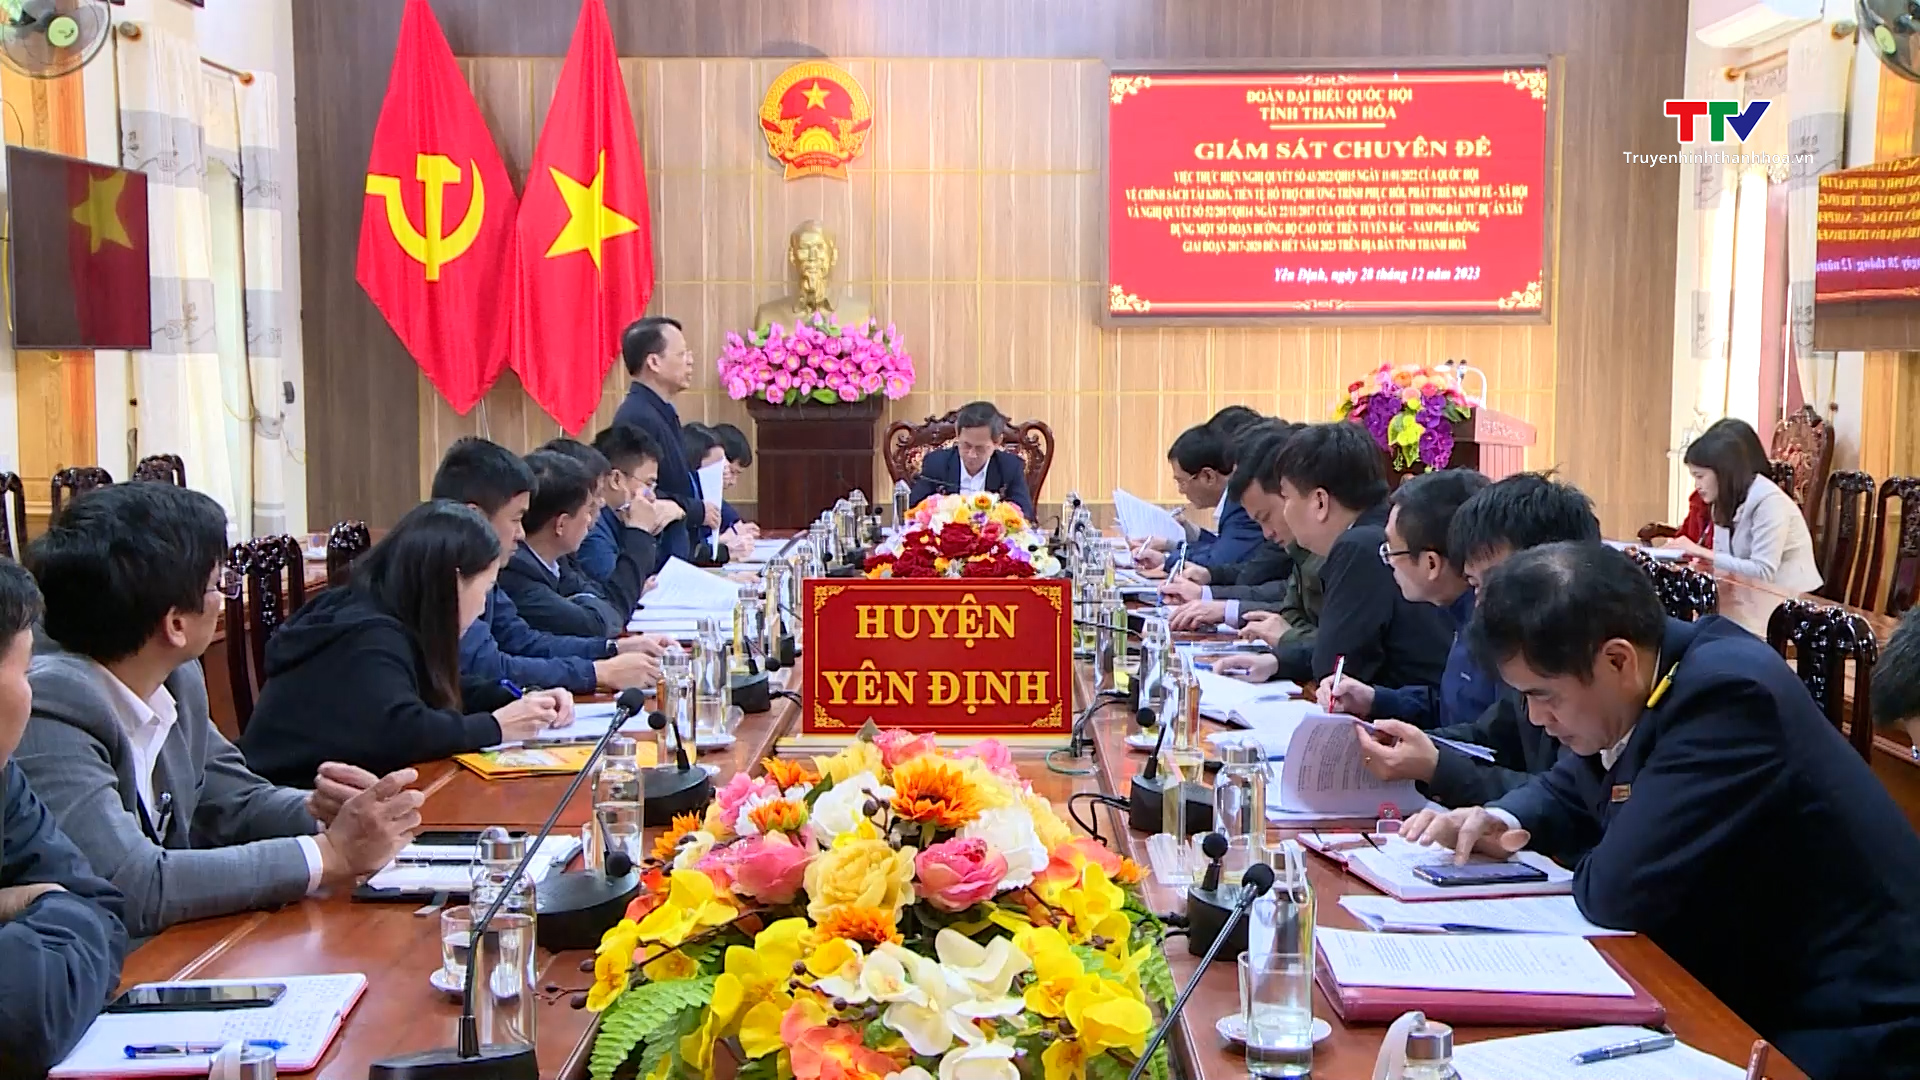 Đoàn đại biểu Quốc hội tỉnh giám sát chuyên đề thực hiện Nghị quyết 43 và Nghị quyết 52 của Quốc hội tại hai huyện Yên Định và Triệu Sơn- Ảnh 1.